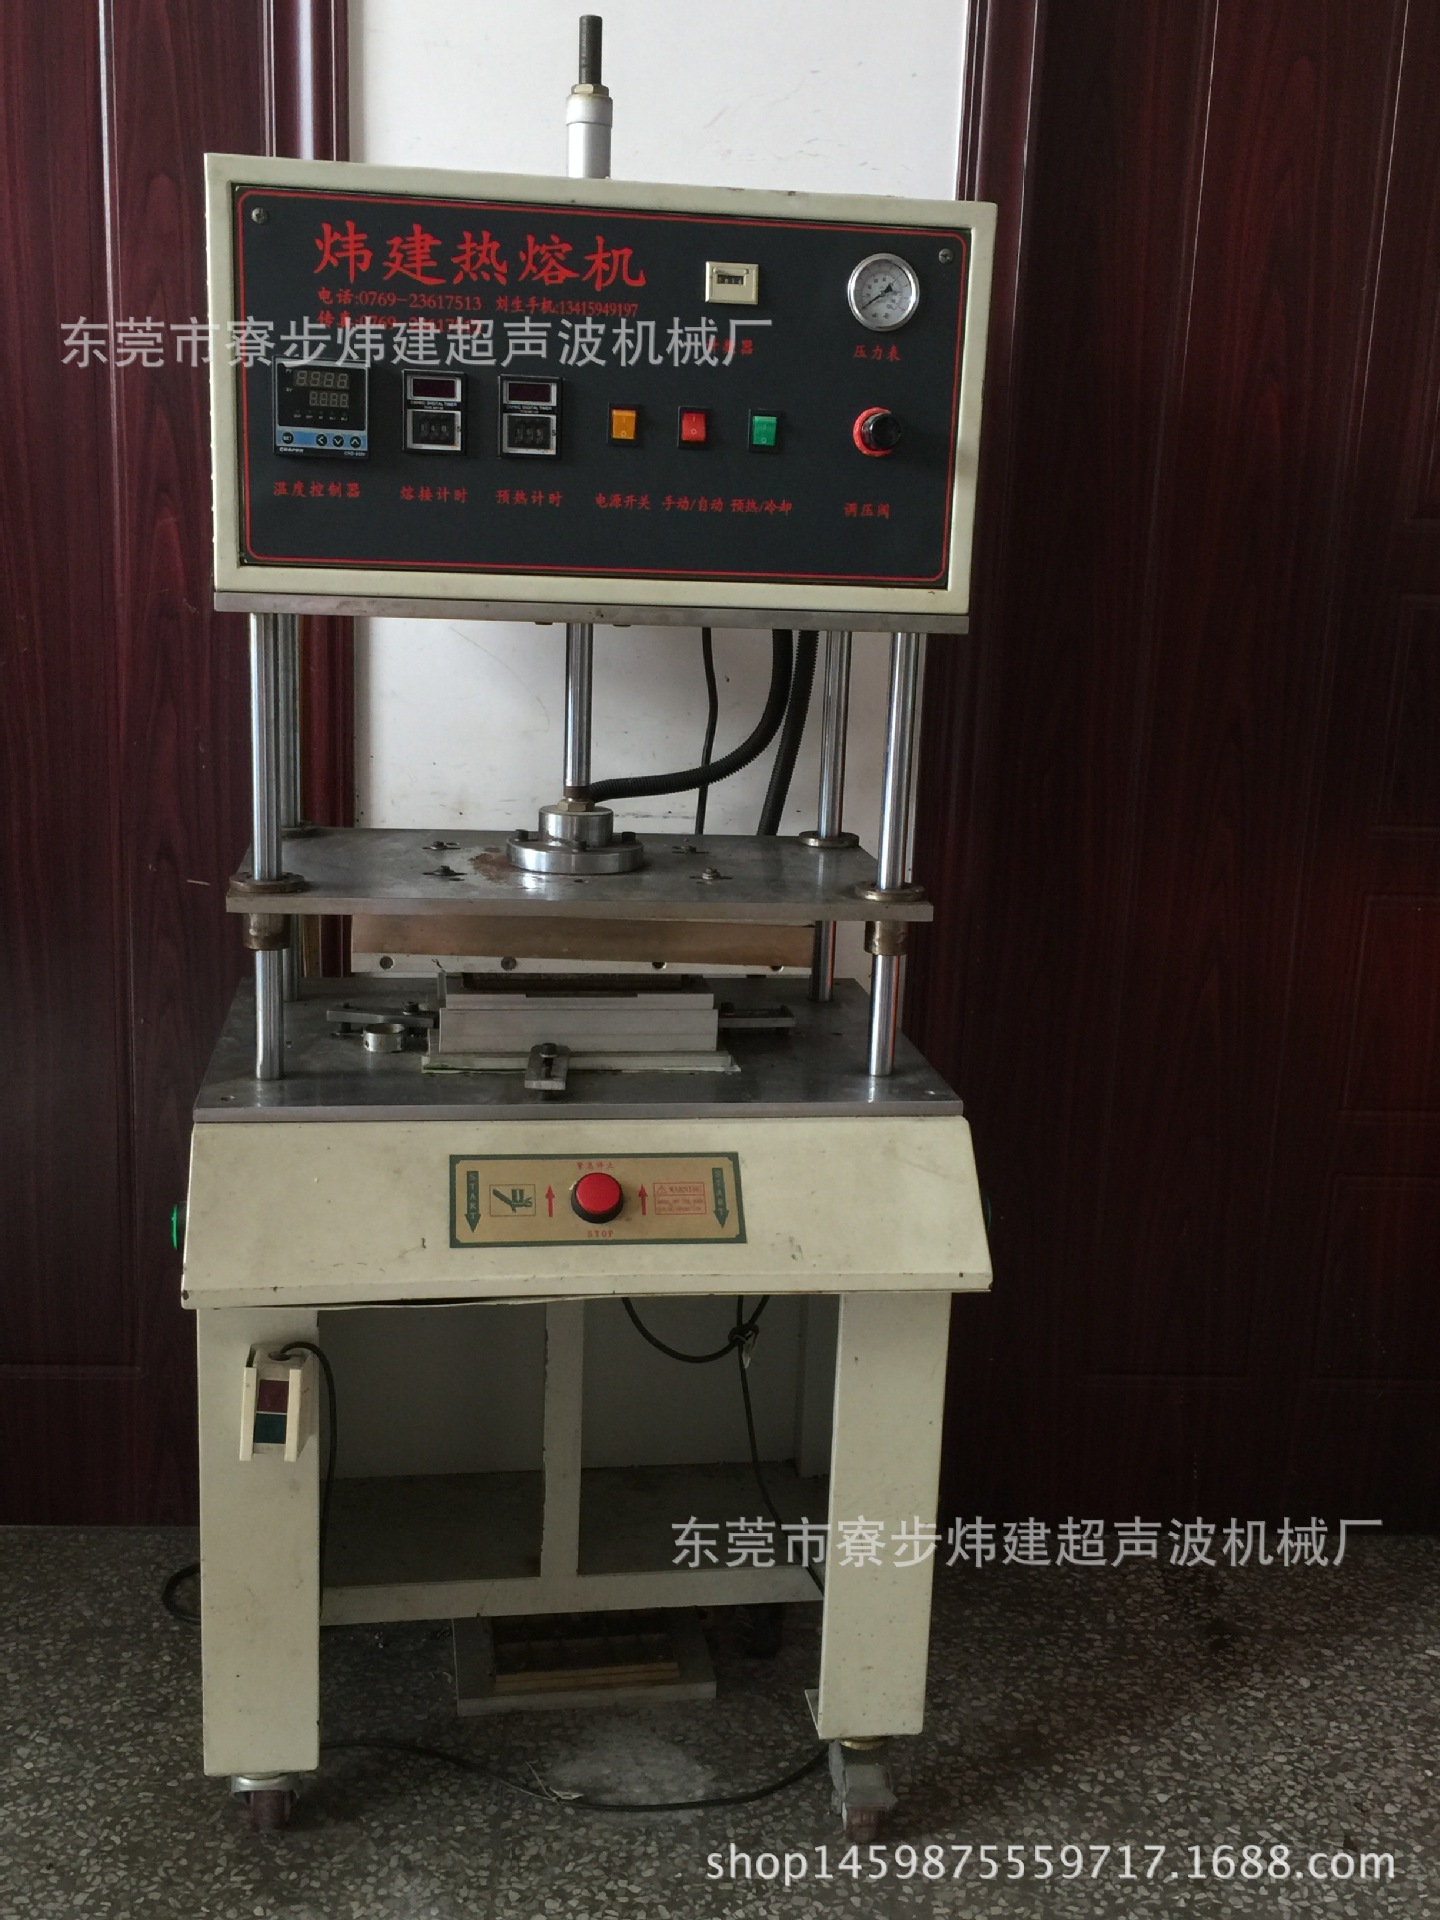 东莞炜建超音波熔接机械厂产销湖南超声波焊接设备、模具加工示例图3